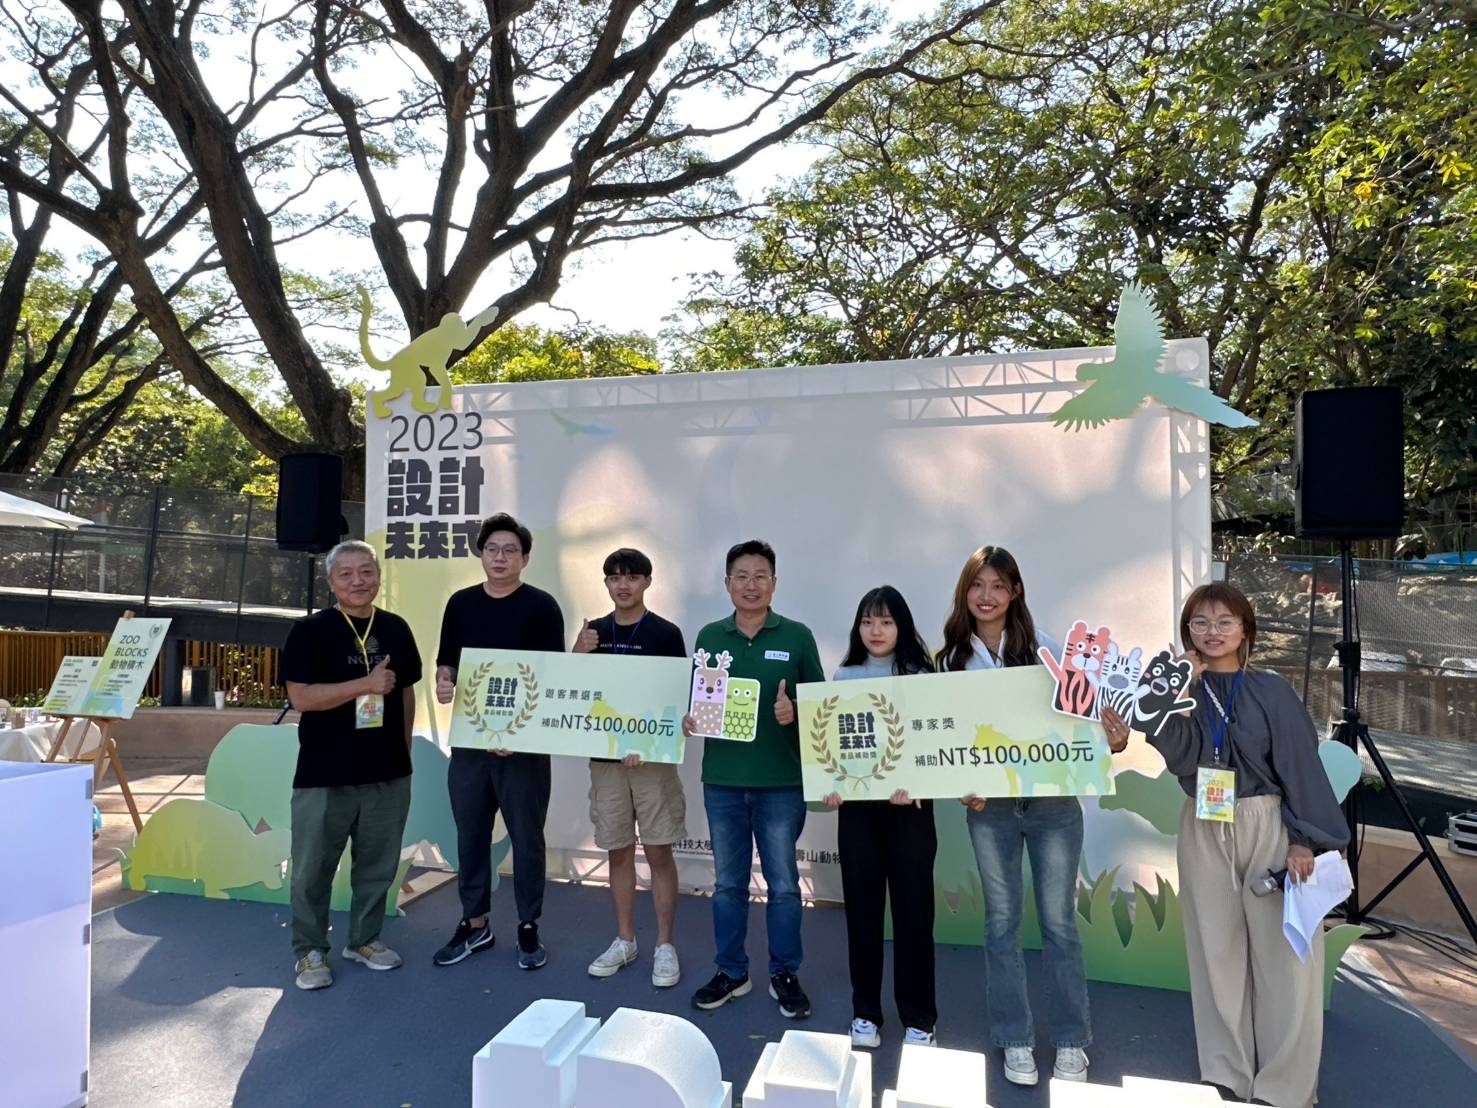 壽山動物園與高科大再合作「2024設計未來式」徵件至4/17止 入選獲10萬補助金